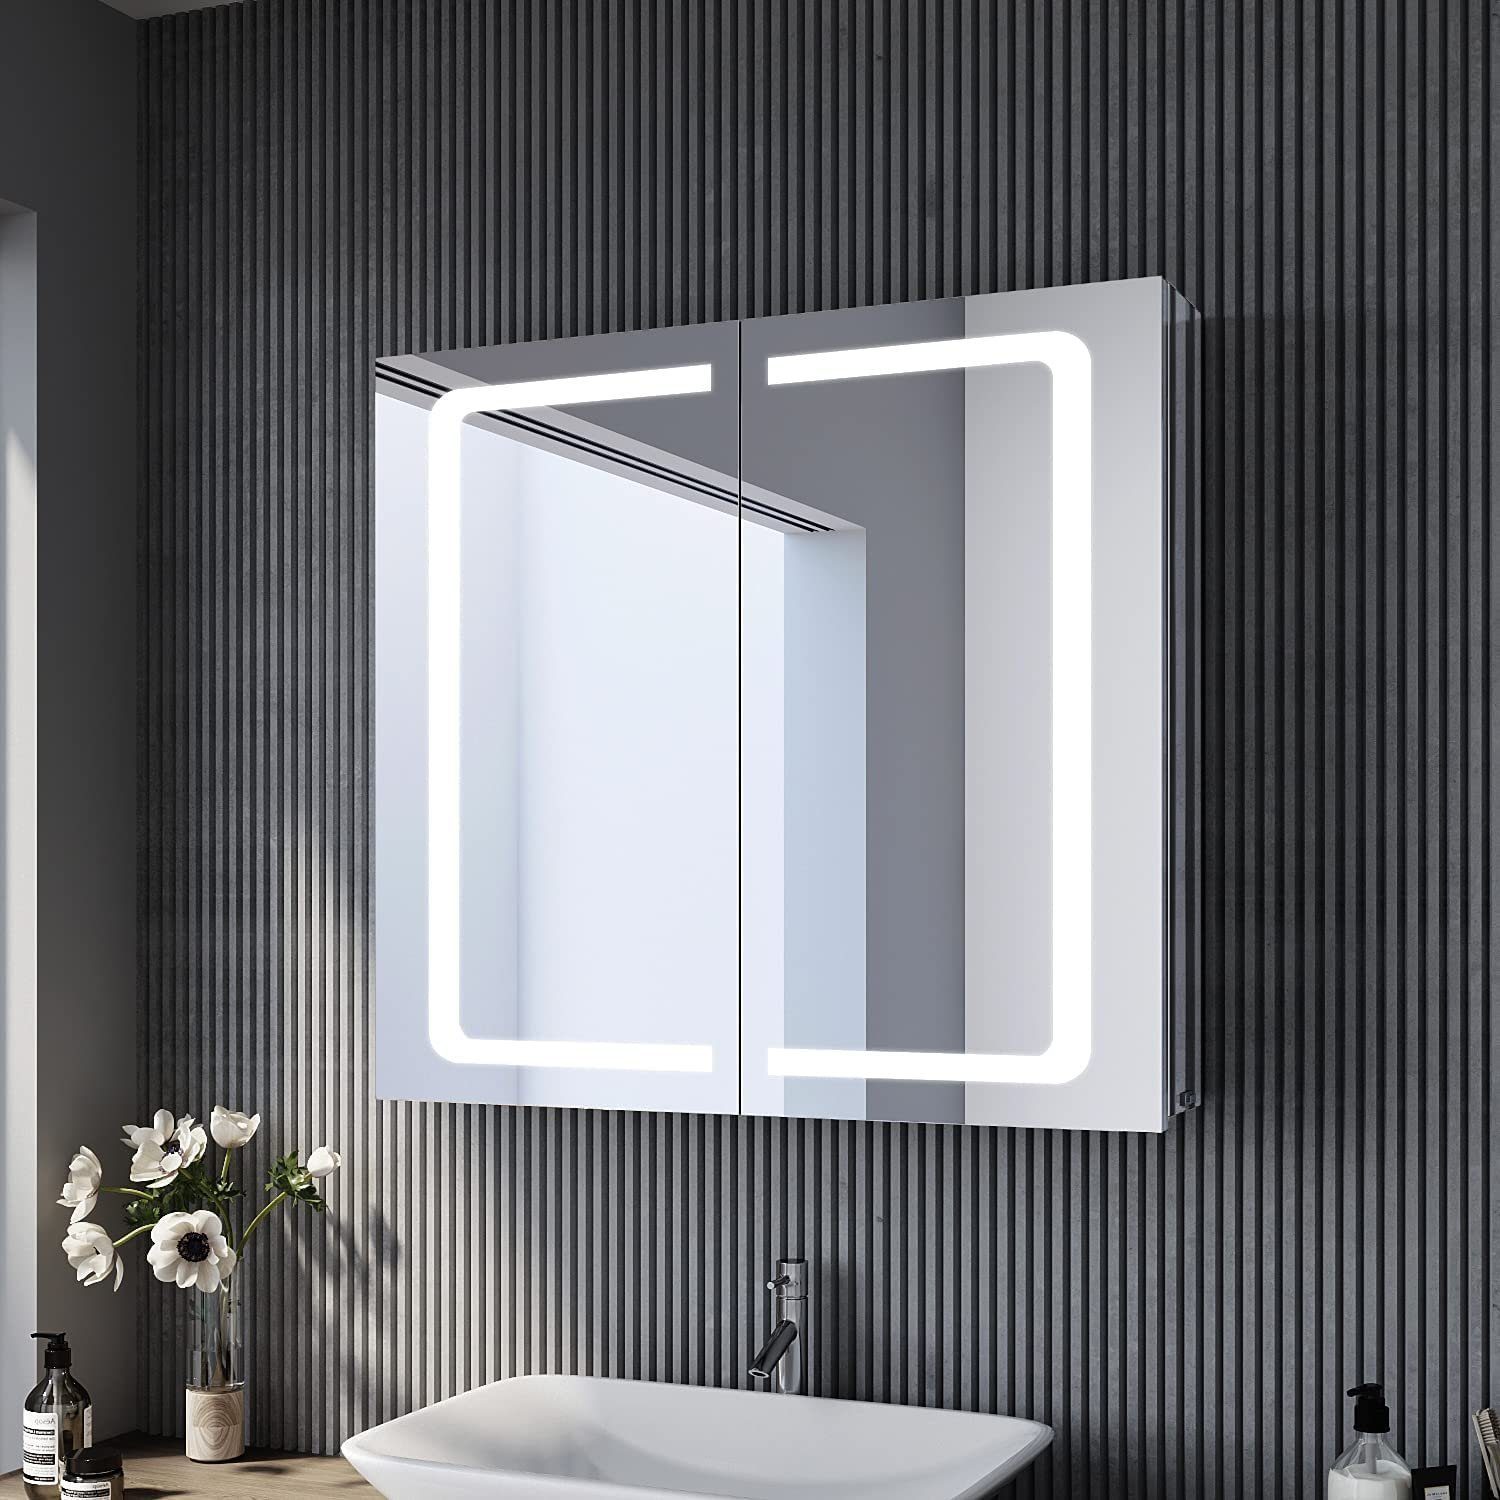 SONNI Spiegelschrank »Spiegelschrank Badezimmer mit Beleuchtung 70x65cm  Edelstahl mit Steckdose Kippschalter Kabelloses Scharnier Design« online  kaufen | OTTO